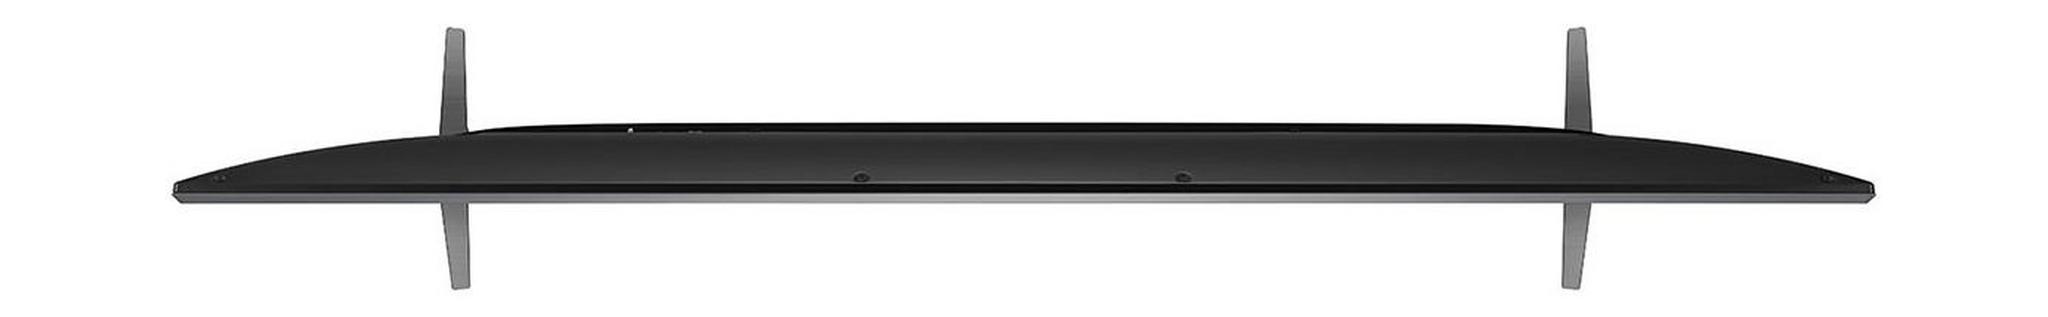 LG 86-inch 4K Ultra JD Smart LED TV - 86UM7580PVA